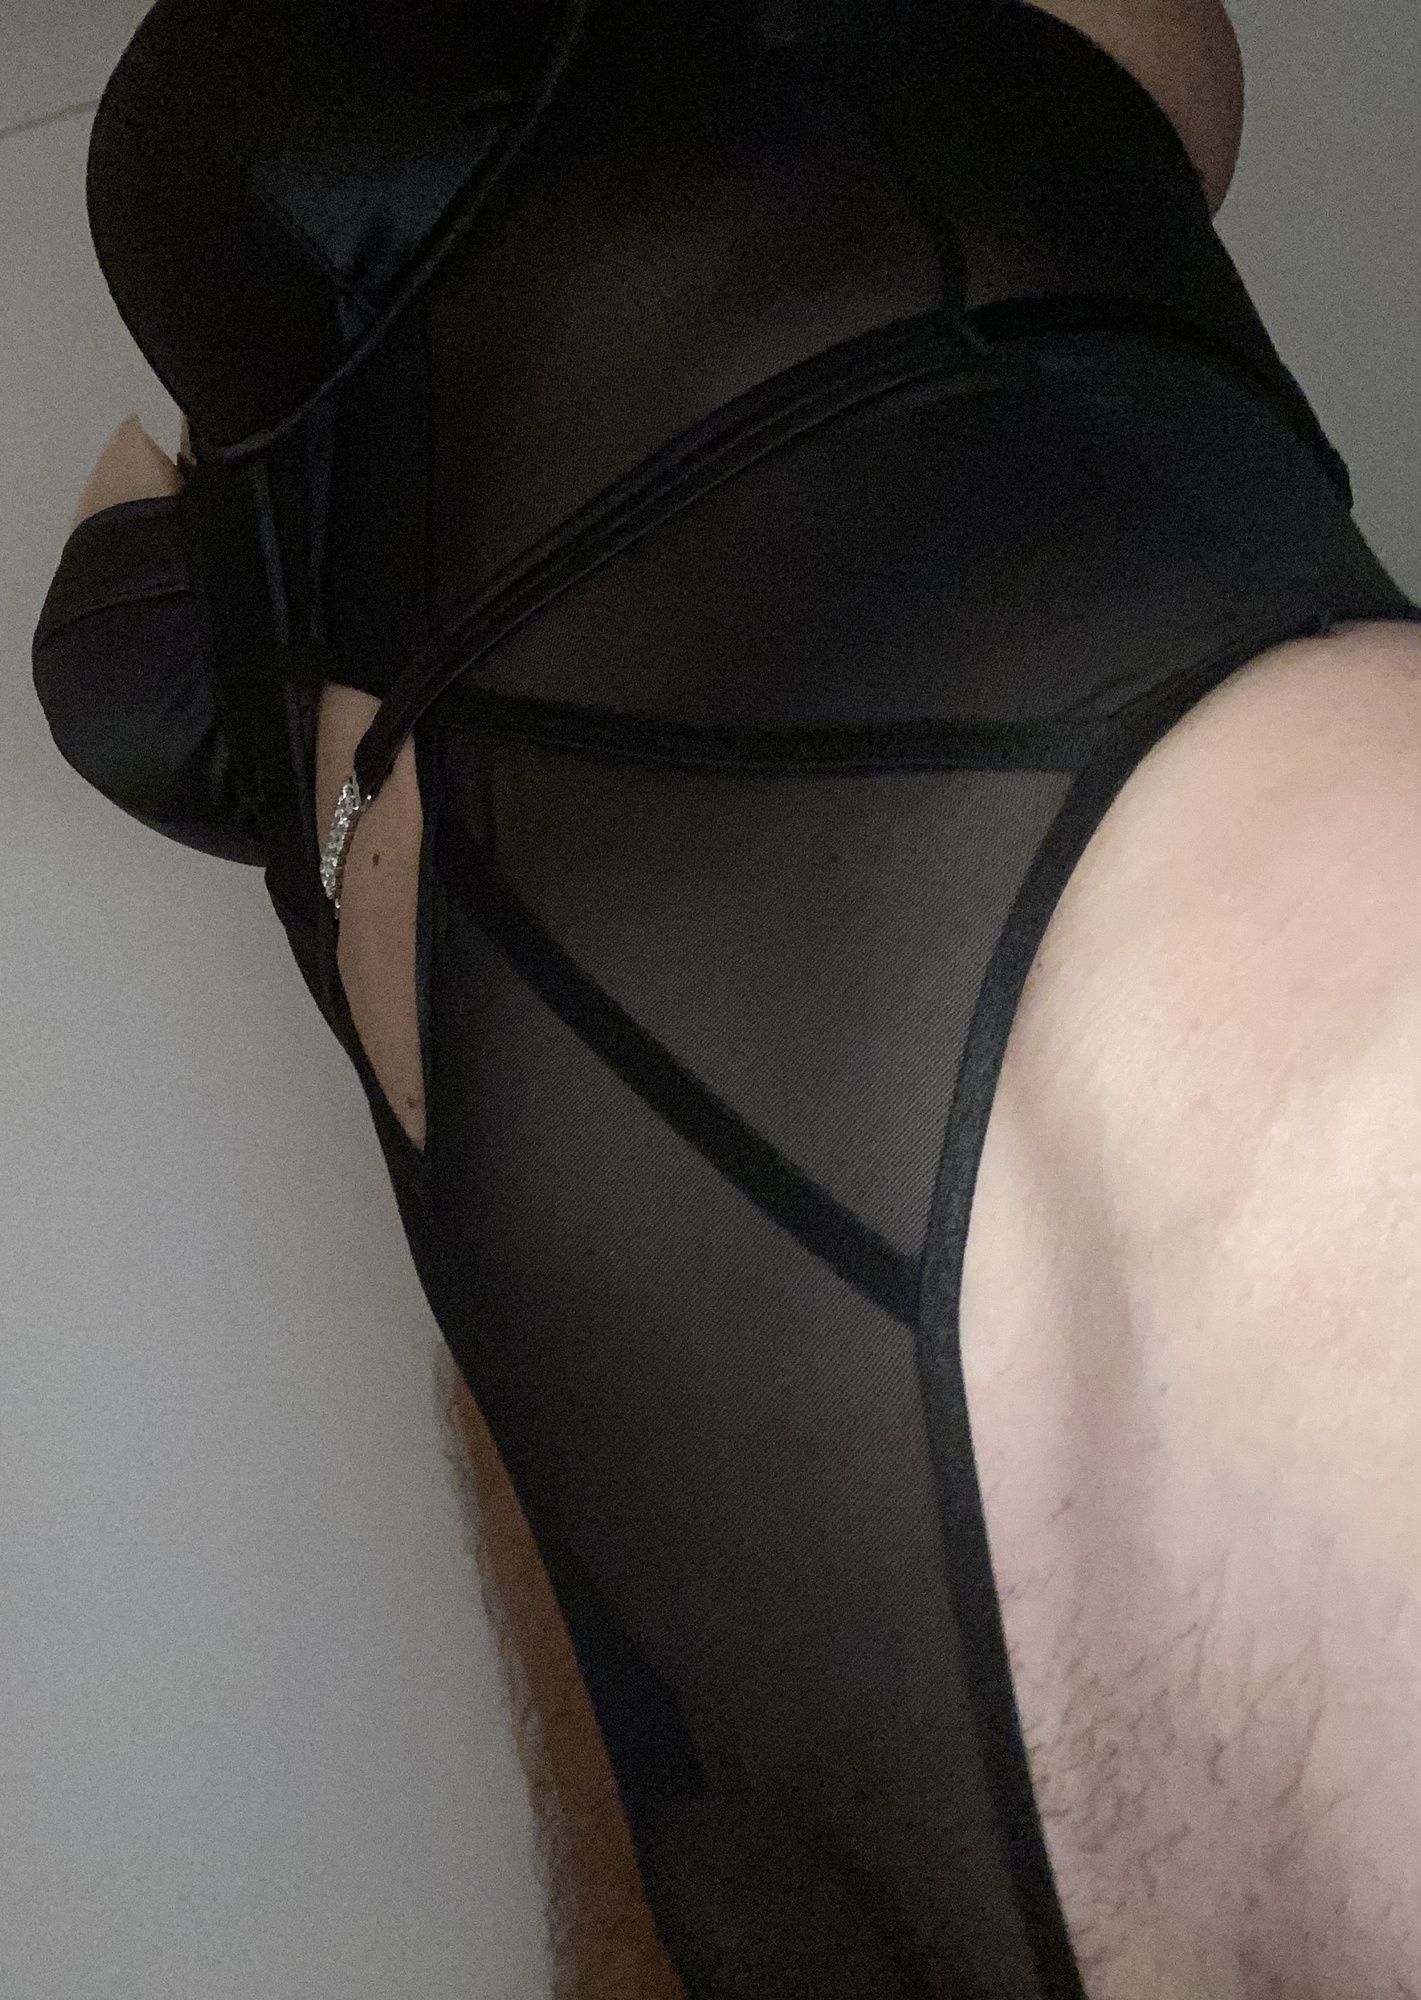 New black lingerie try on #13